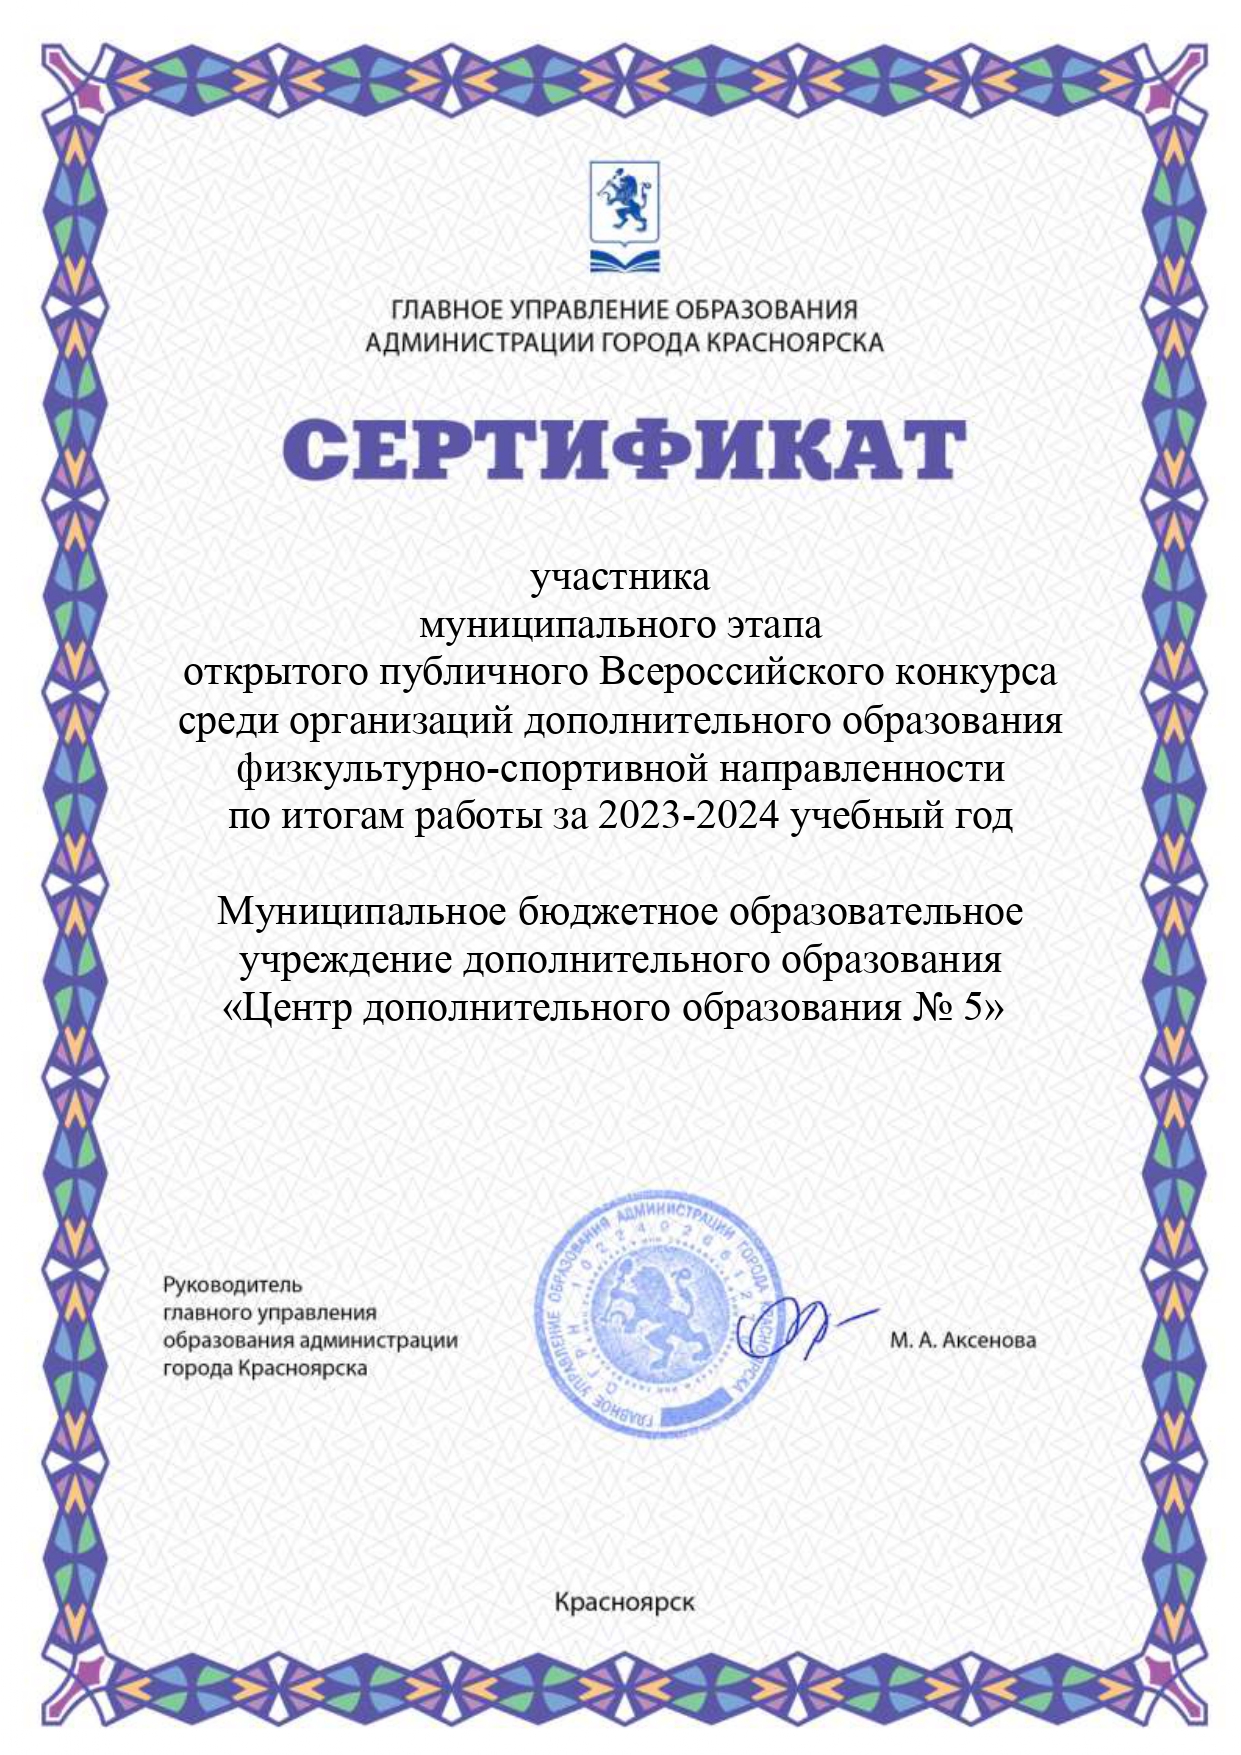 Сертификат участника ЦДО 5 page 0001